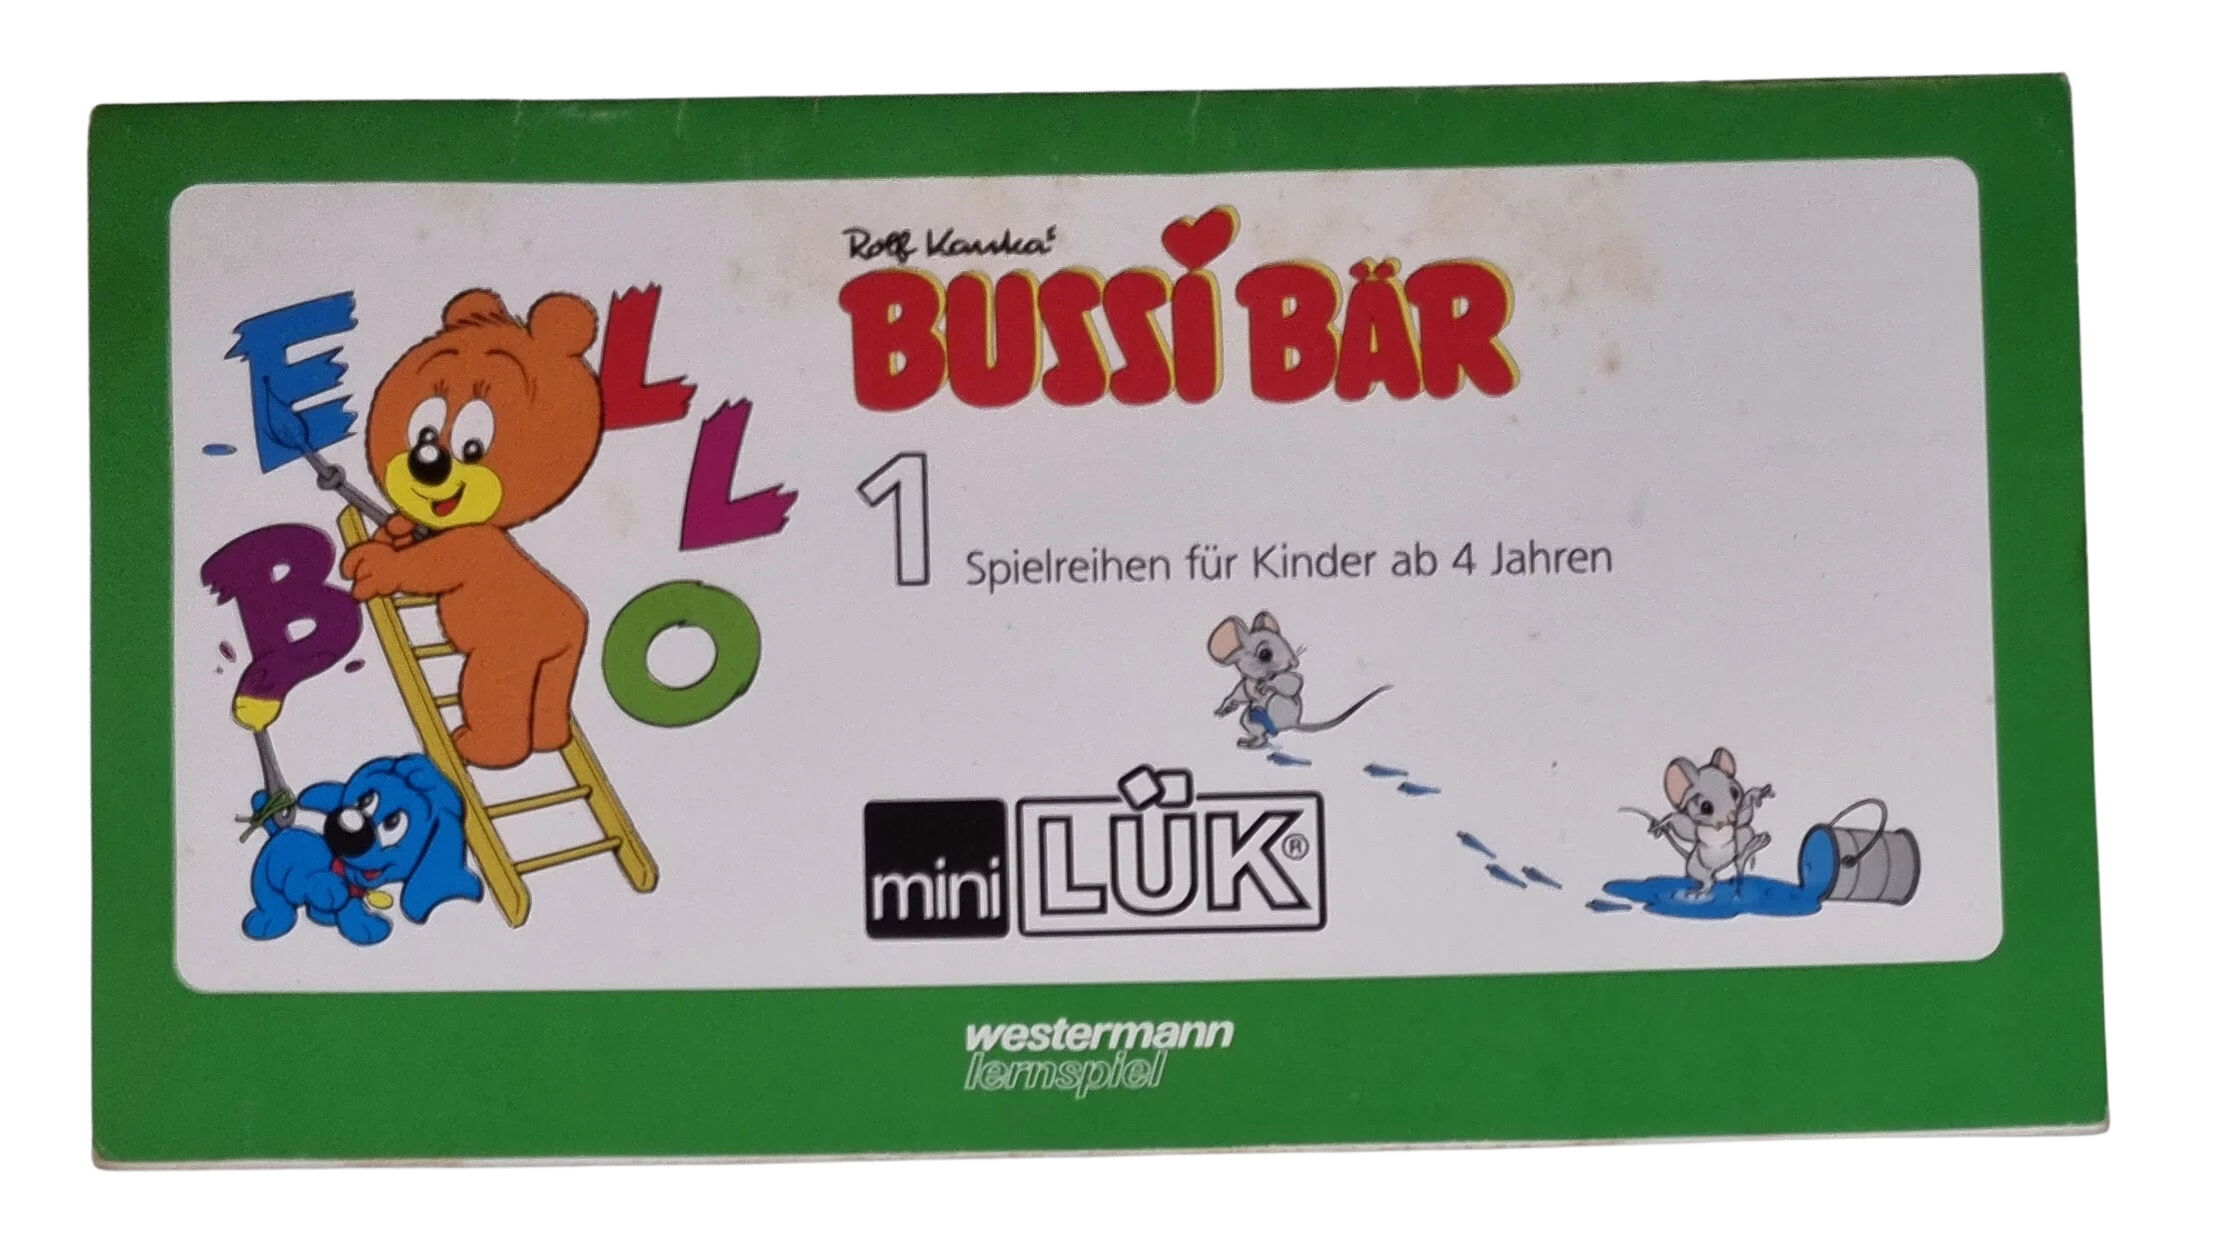 Mini Lük Bussi Bär 1 Spielreihen für Kinder ab 4 Jahre